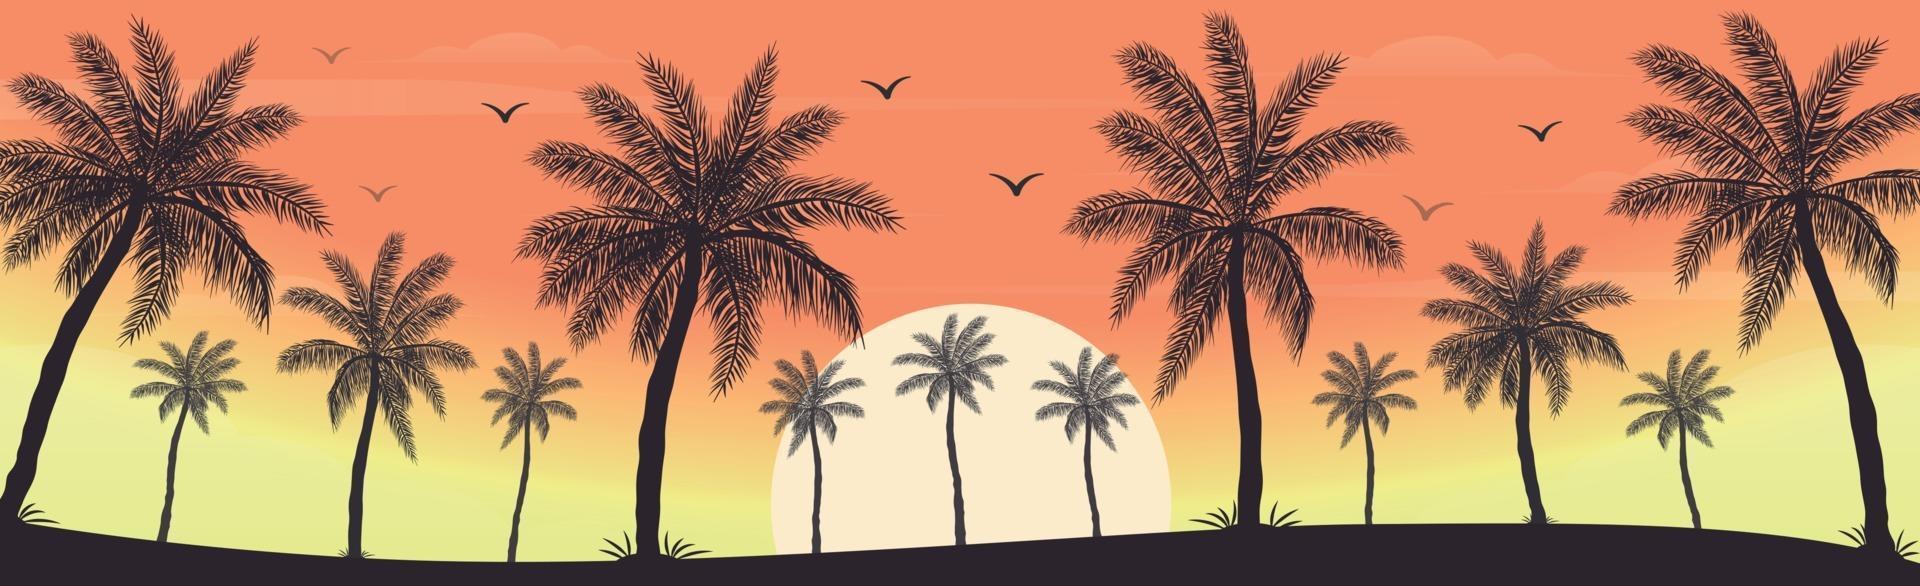 coucher de soleil sur la plage avec des palmiers vecteur